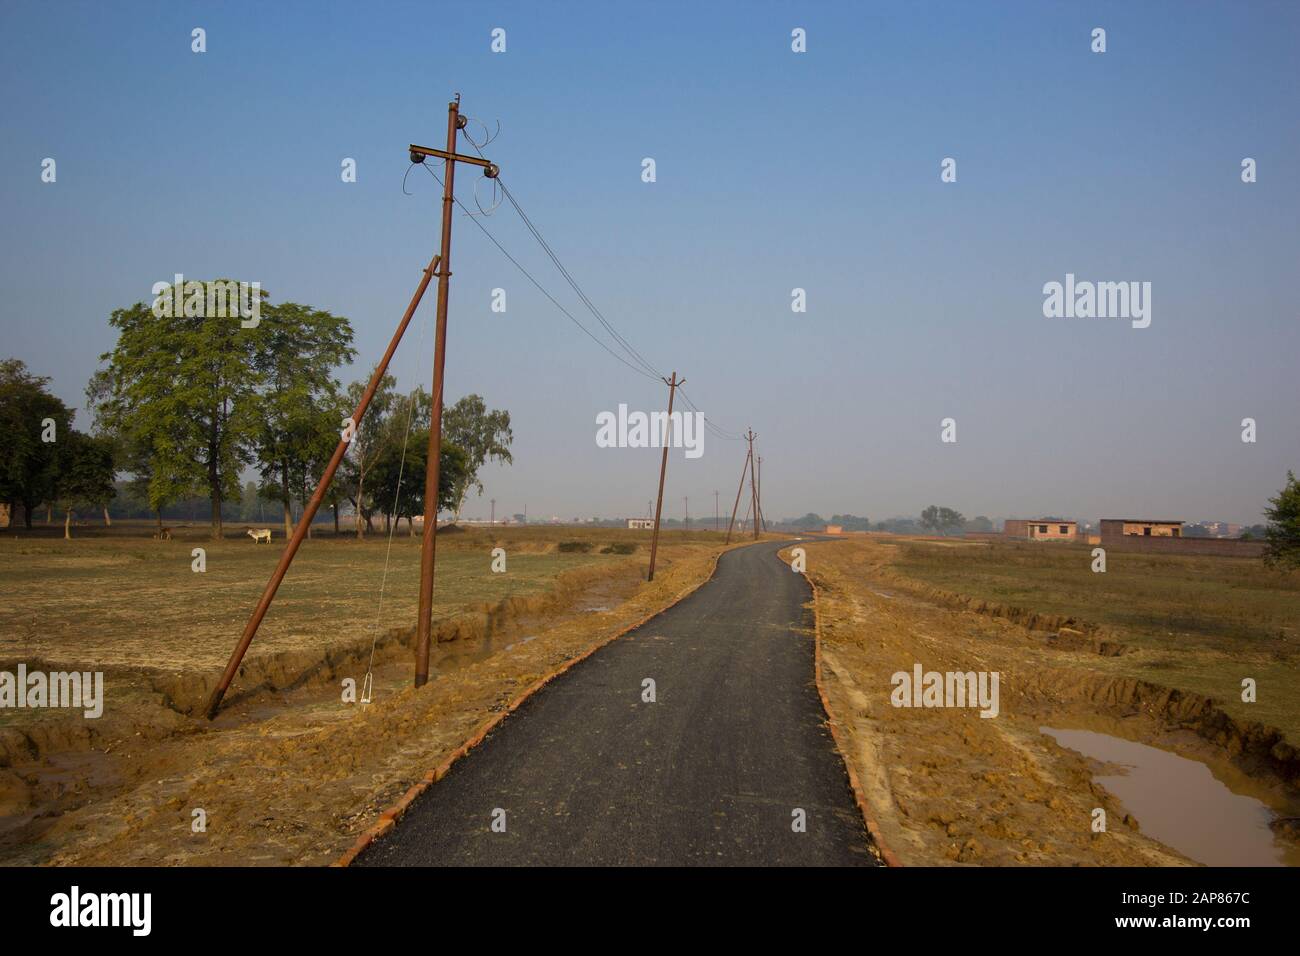 Ein Blick auf eine einspurige, gepflasterte Landstraße mit einer Reihe bescheidener, rostiger Pole für Stromleitungen. In Allalabad, Uttar Pradesh, Indien. Stockfoto